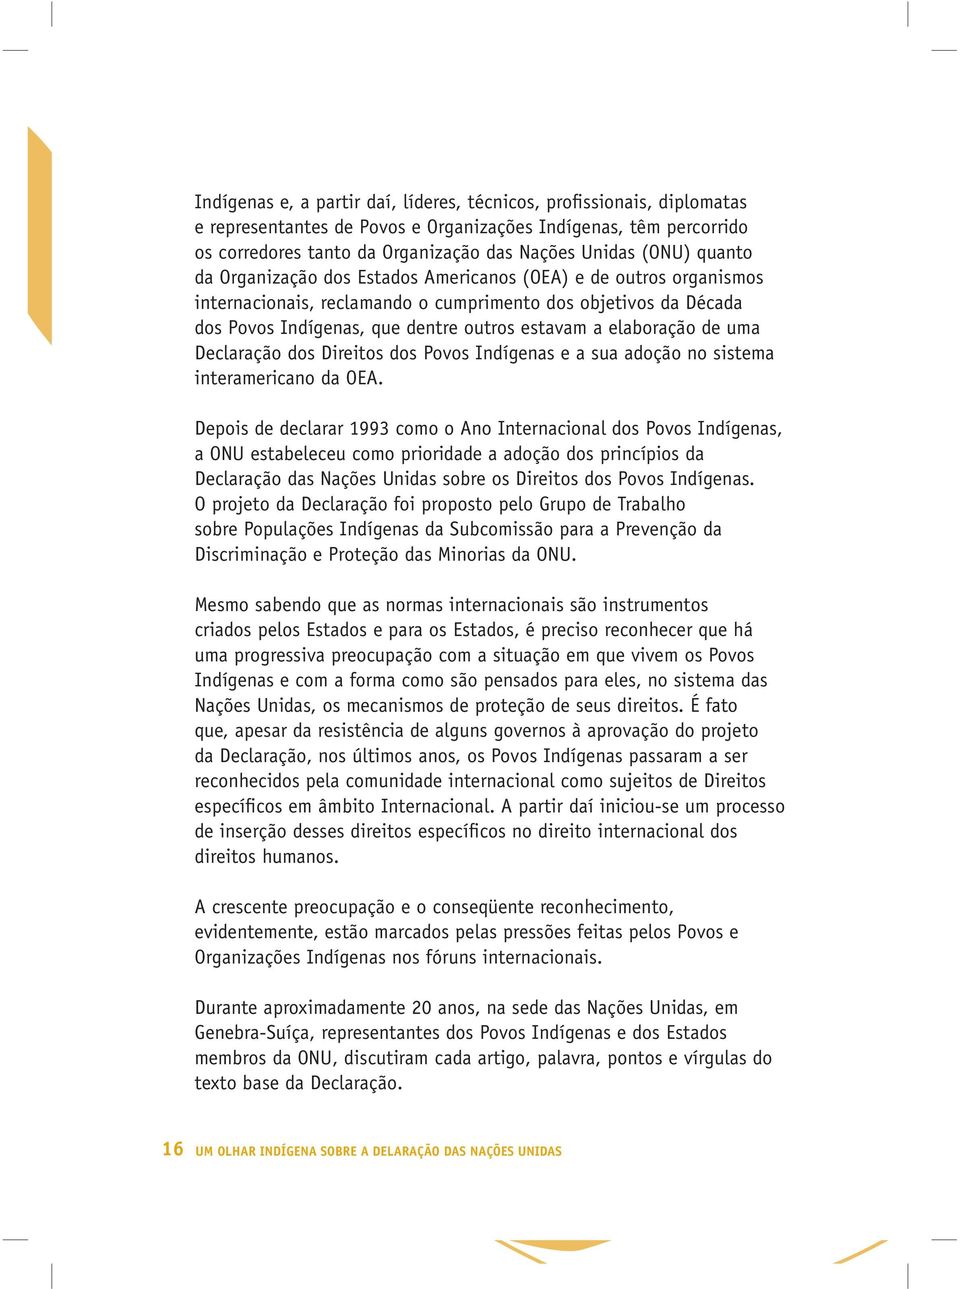 de uma Declaração dos Direitos dos Povos Indígenas e a sua adoção no sistema interamericano da OEA.